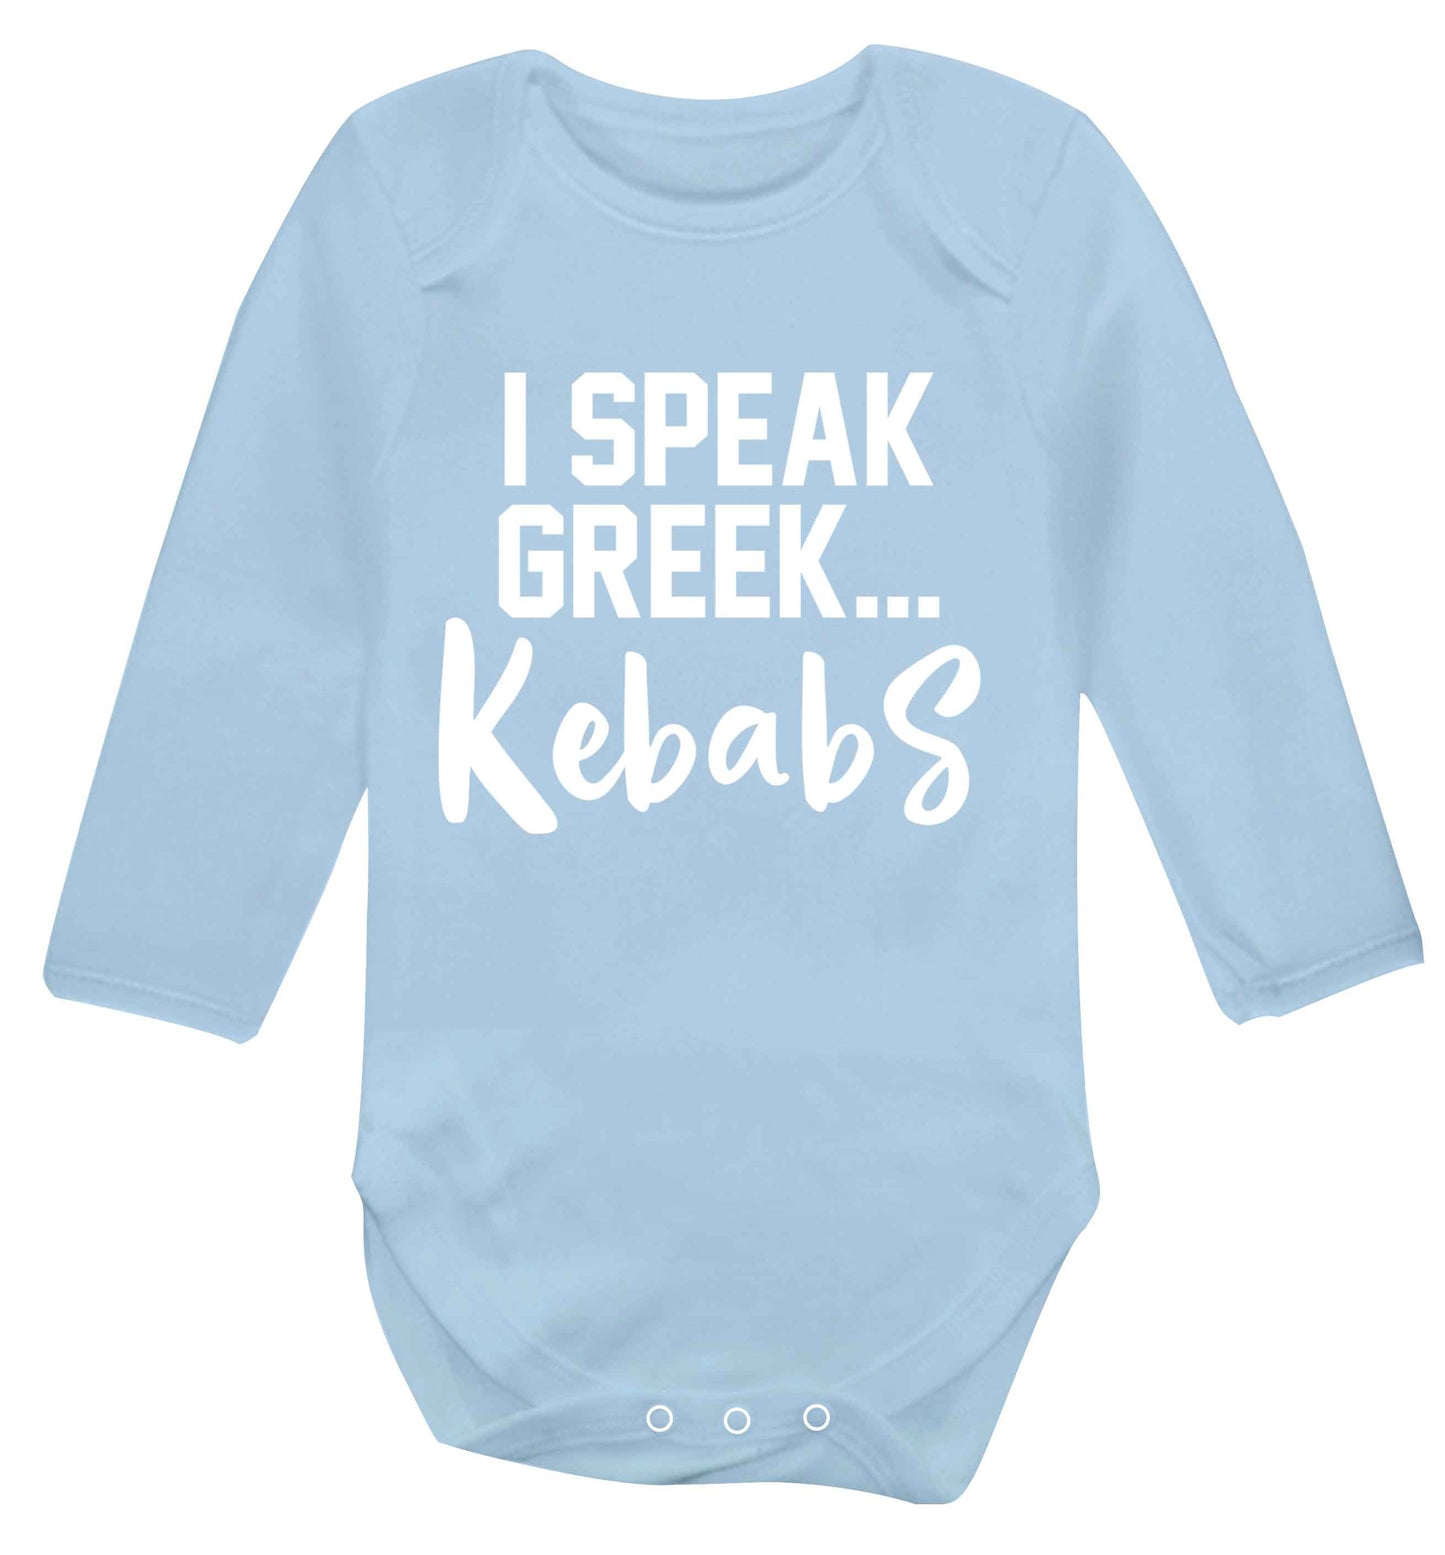 I speak Greek...kebabs Baby Vest long sleeved pale blue 6-12 months